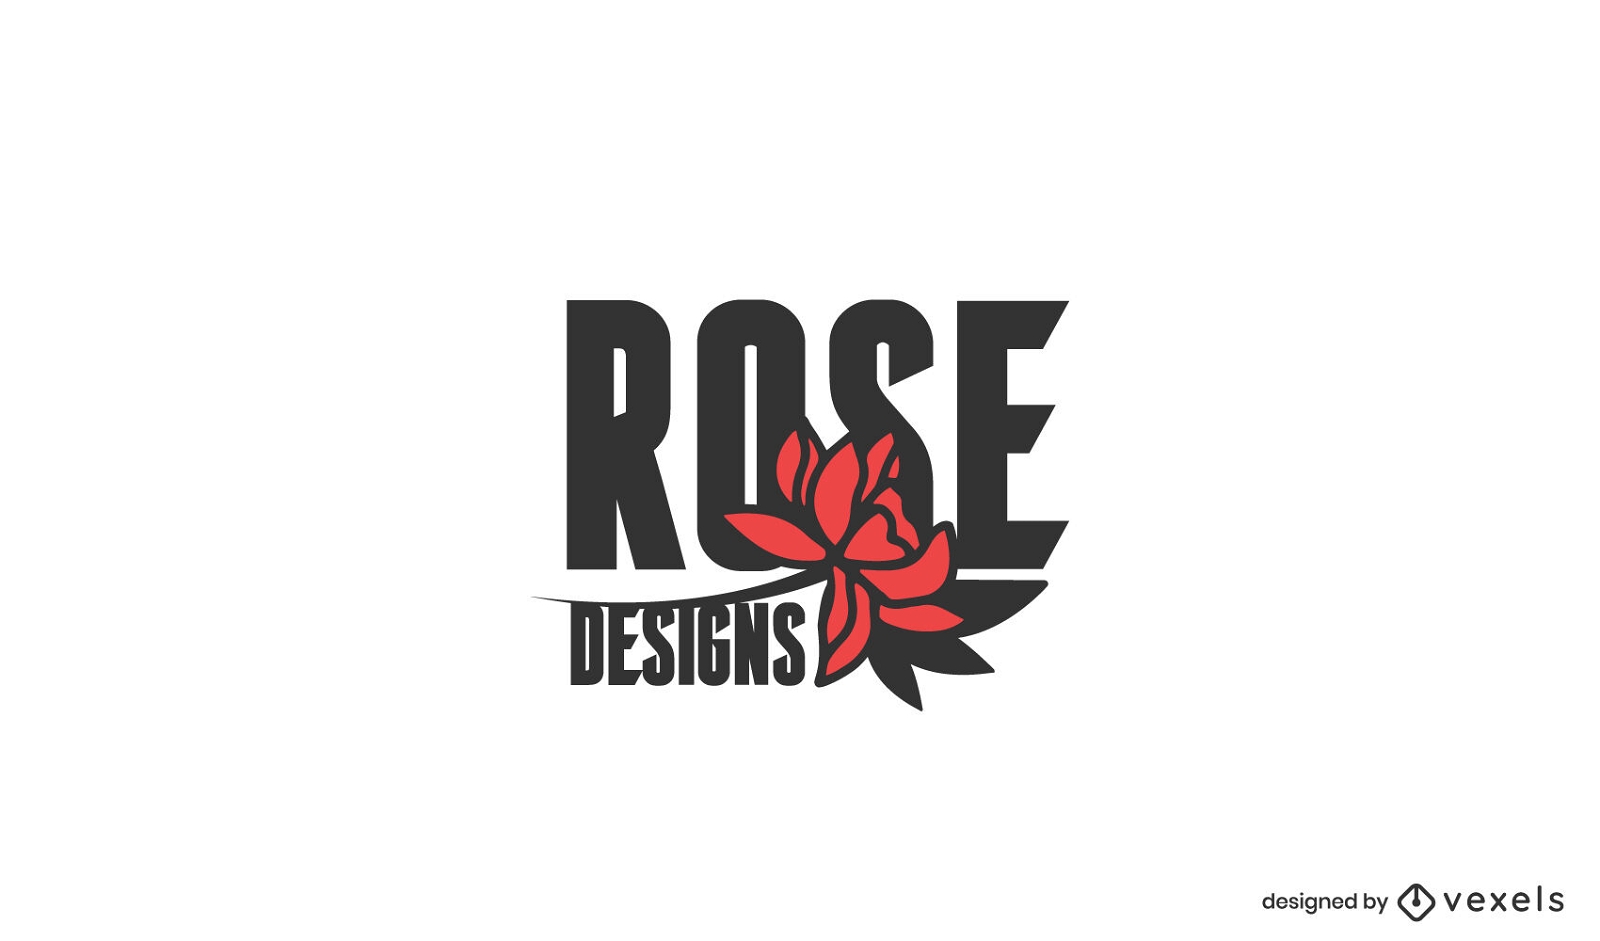 Dise?o de logotipo de dise?os de rosas.